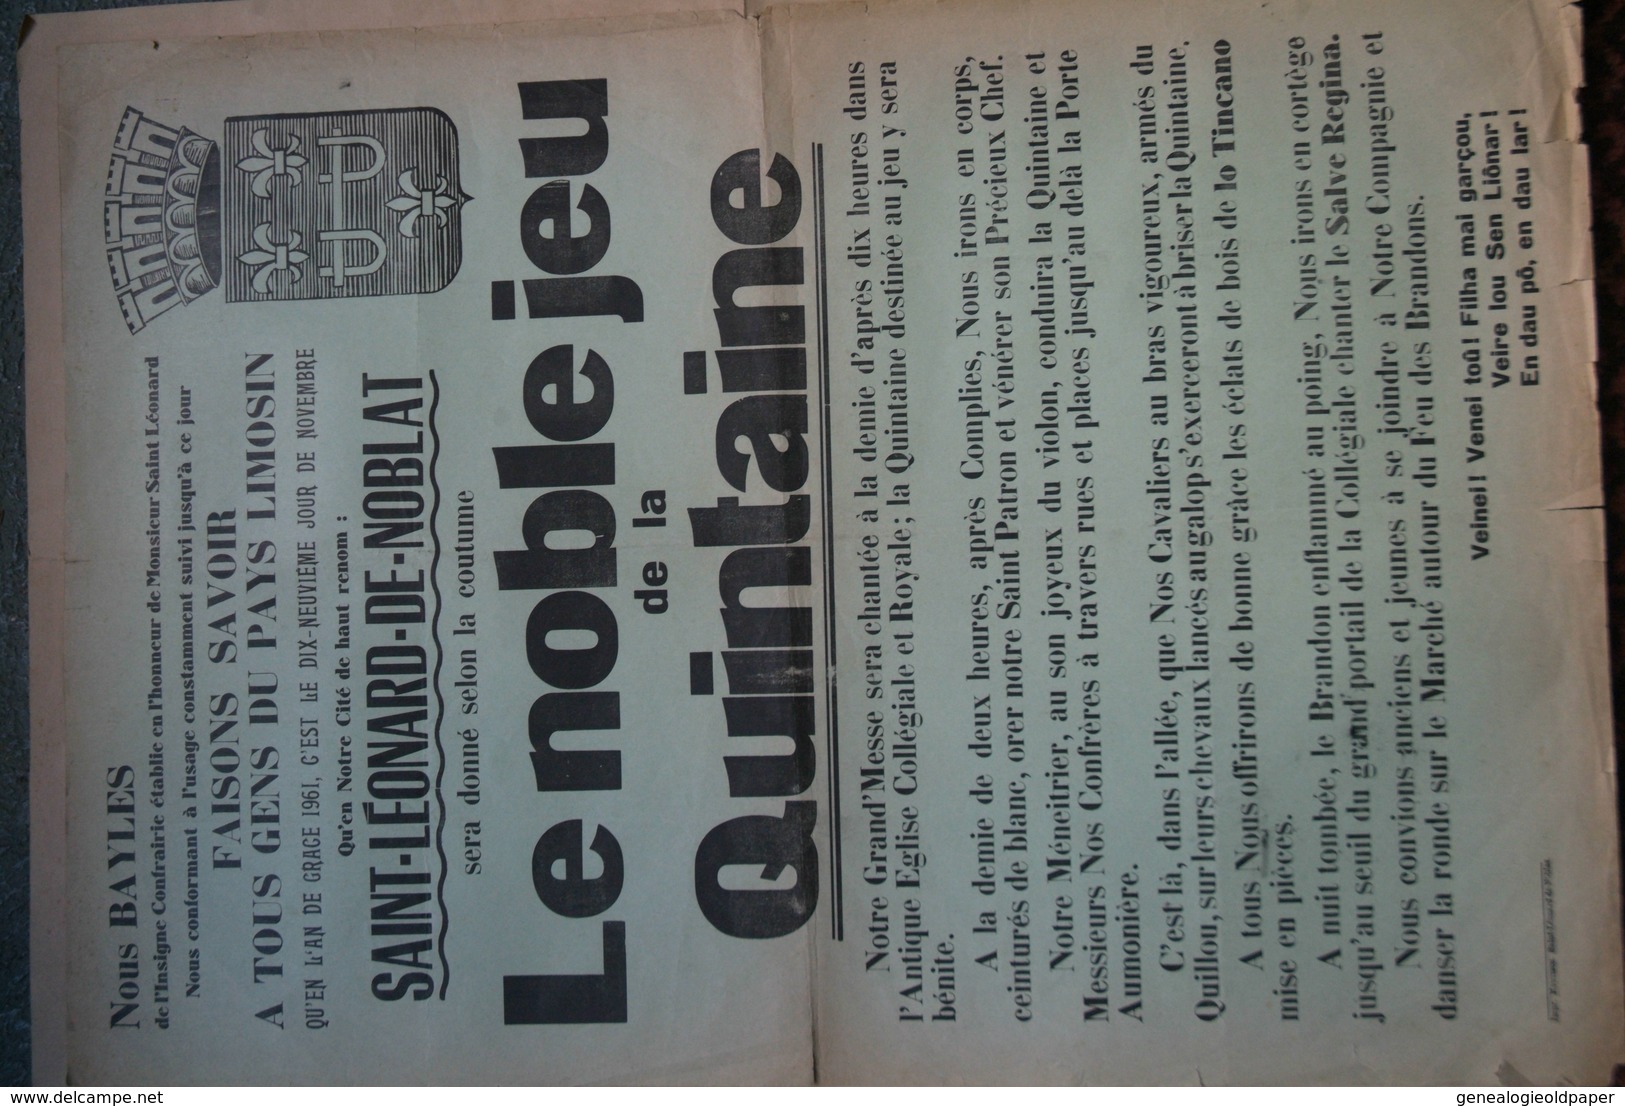 87 -ST SAINT LEONARD NOBLAT-RARE AFFICHE LE NOBLE JEU DE LA QUINTAINE- 1961-BAYLES MESSE EGLISE -IMPRIMERIE MONTIBUS - Afiches